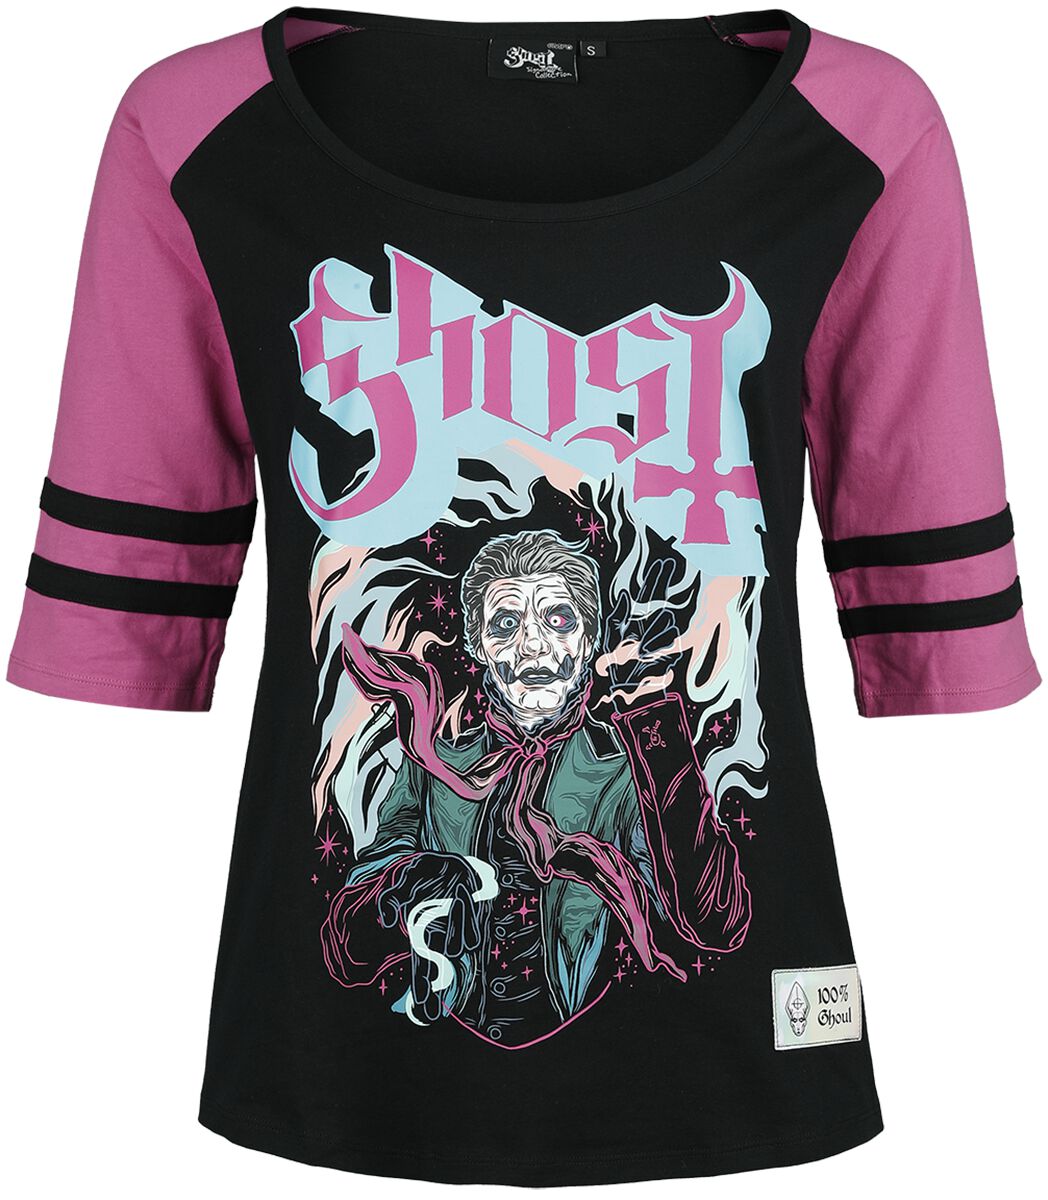 Ghost Langarmshirt - EMP Signature Collection - S bis XXL - für Damen - Größe XXL - schwarz/pink  - EMP exklusives Merchandise! von Ghost